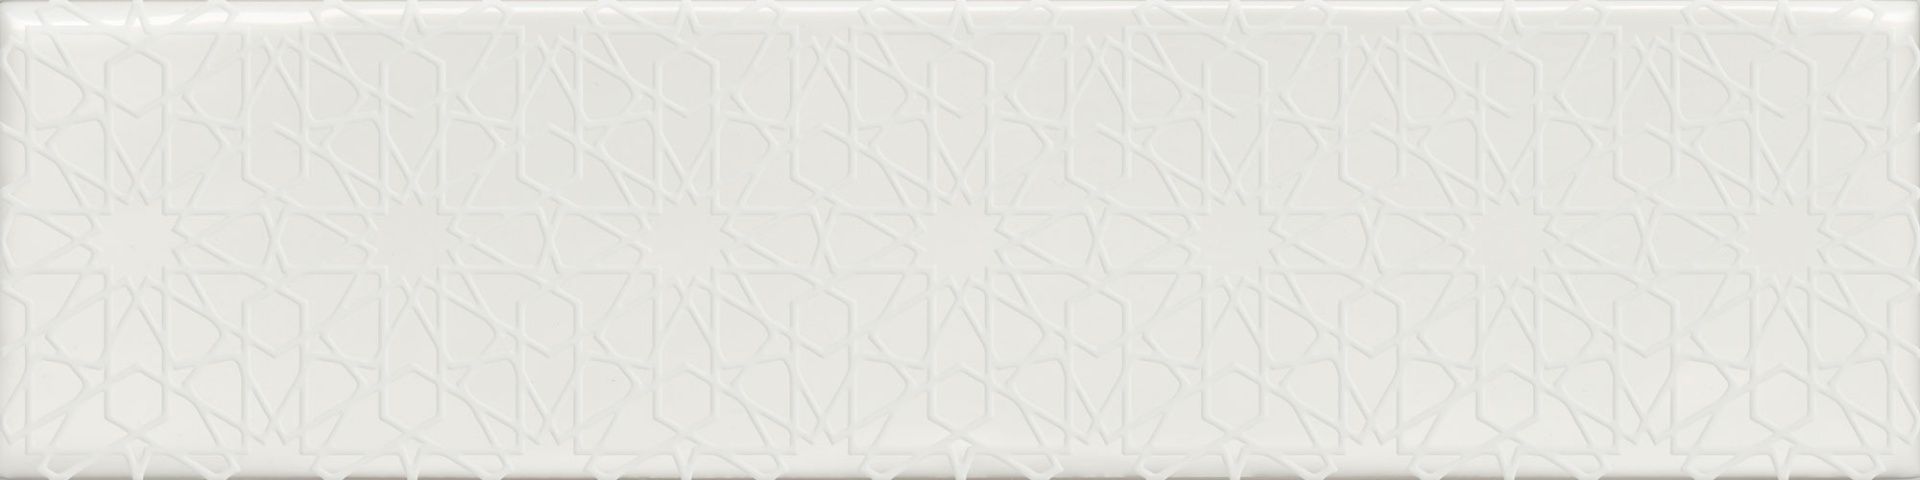 Керамическая плитка FLORENCIA DECOR SUPER BLANCO Декор 7,5x30